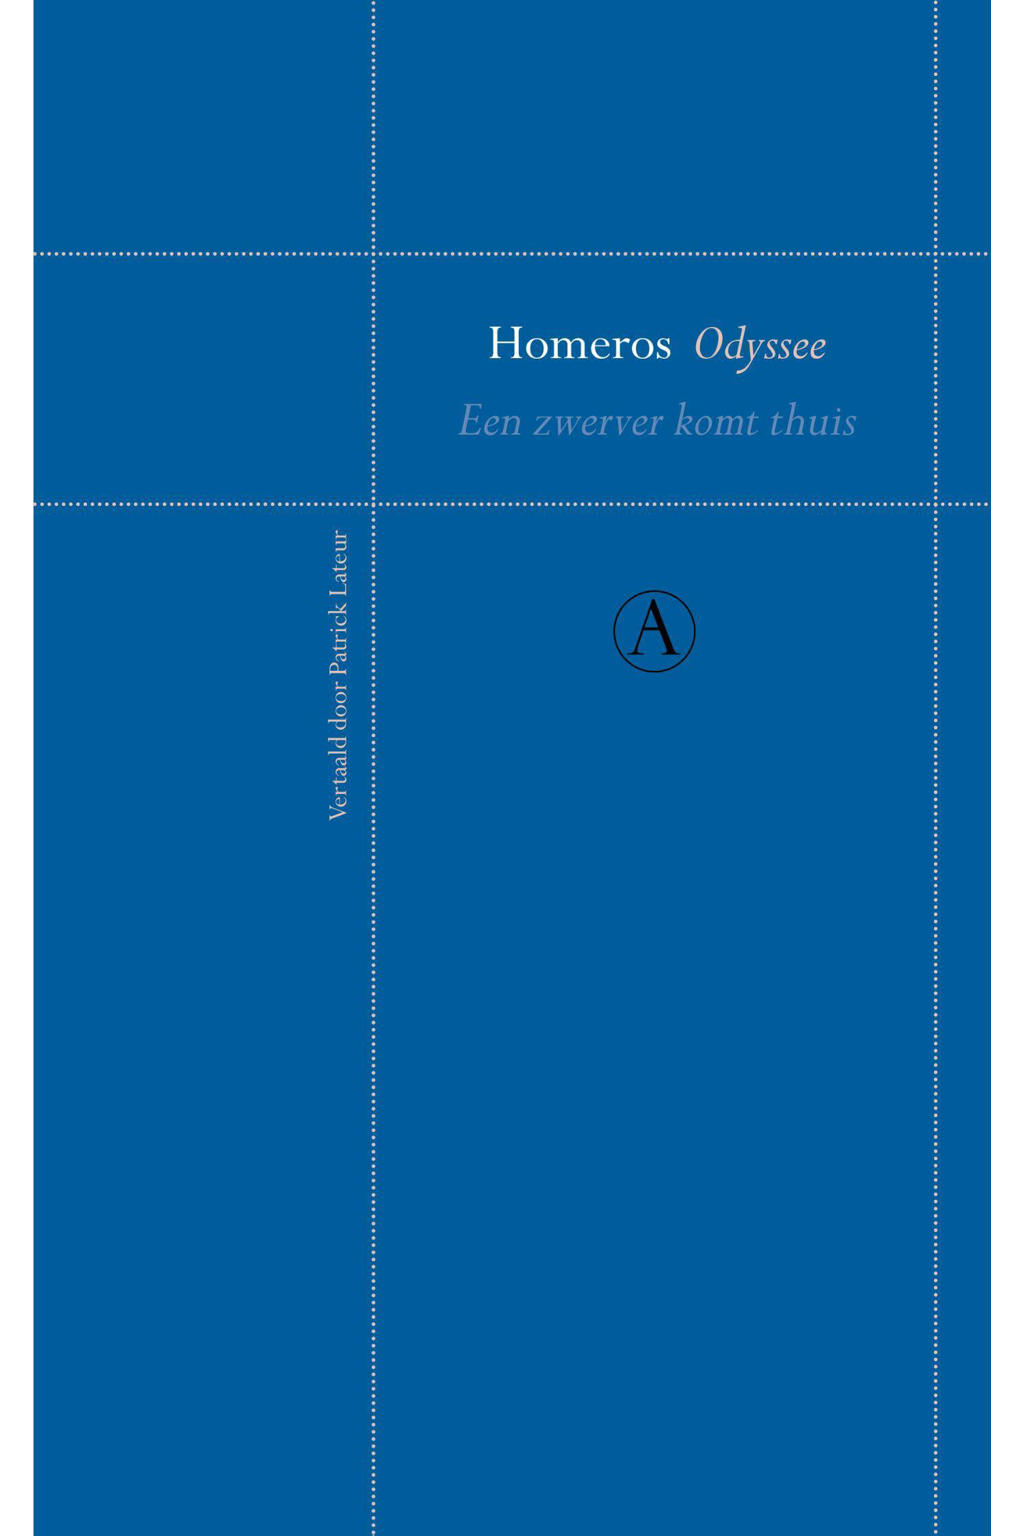 Odyssee - Homeros